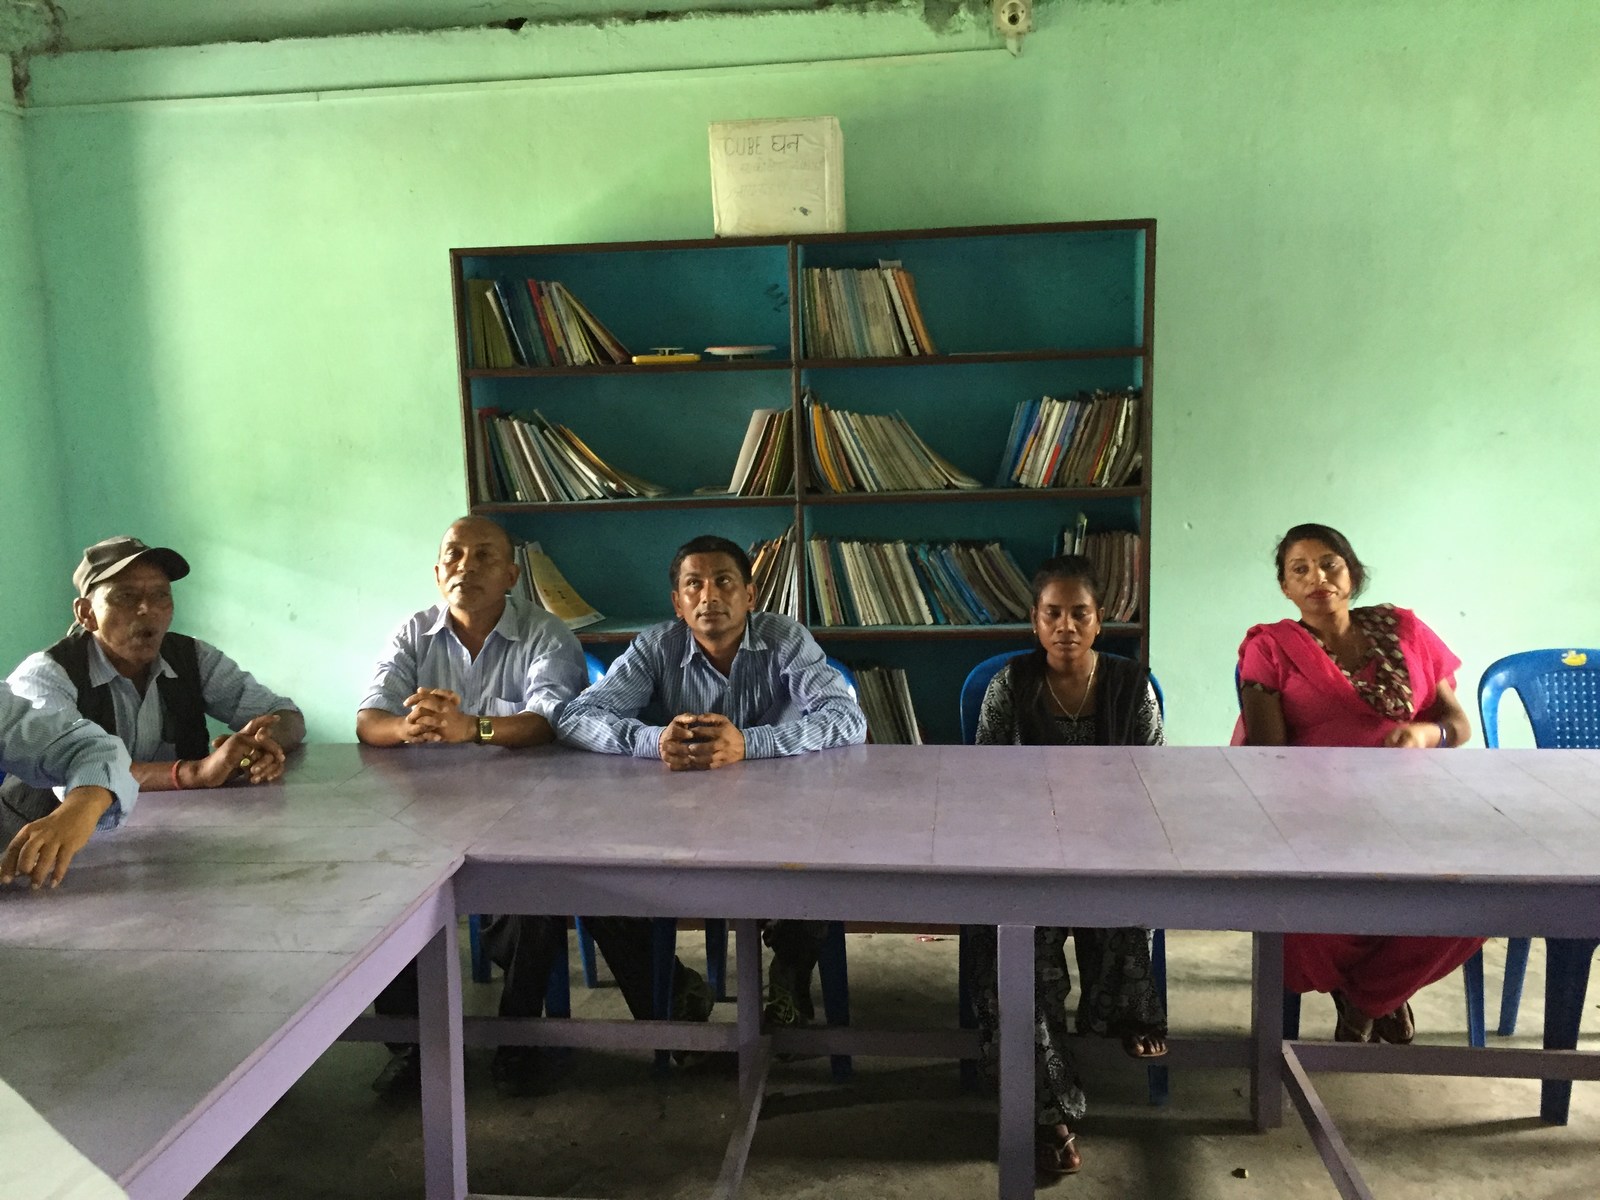 Computer-handover-to-Mechi-Adharbhut-Vidyalaya-Rotary-Club-of-Kakarvitta-4